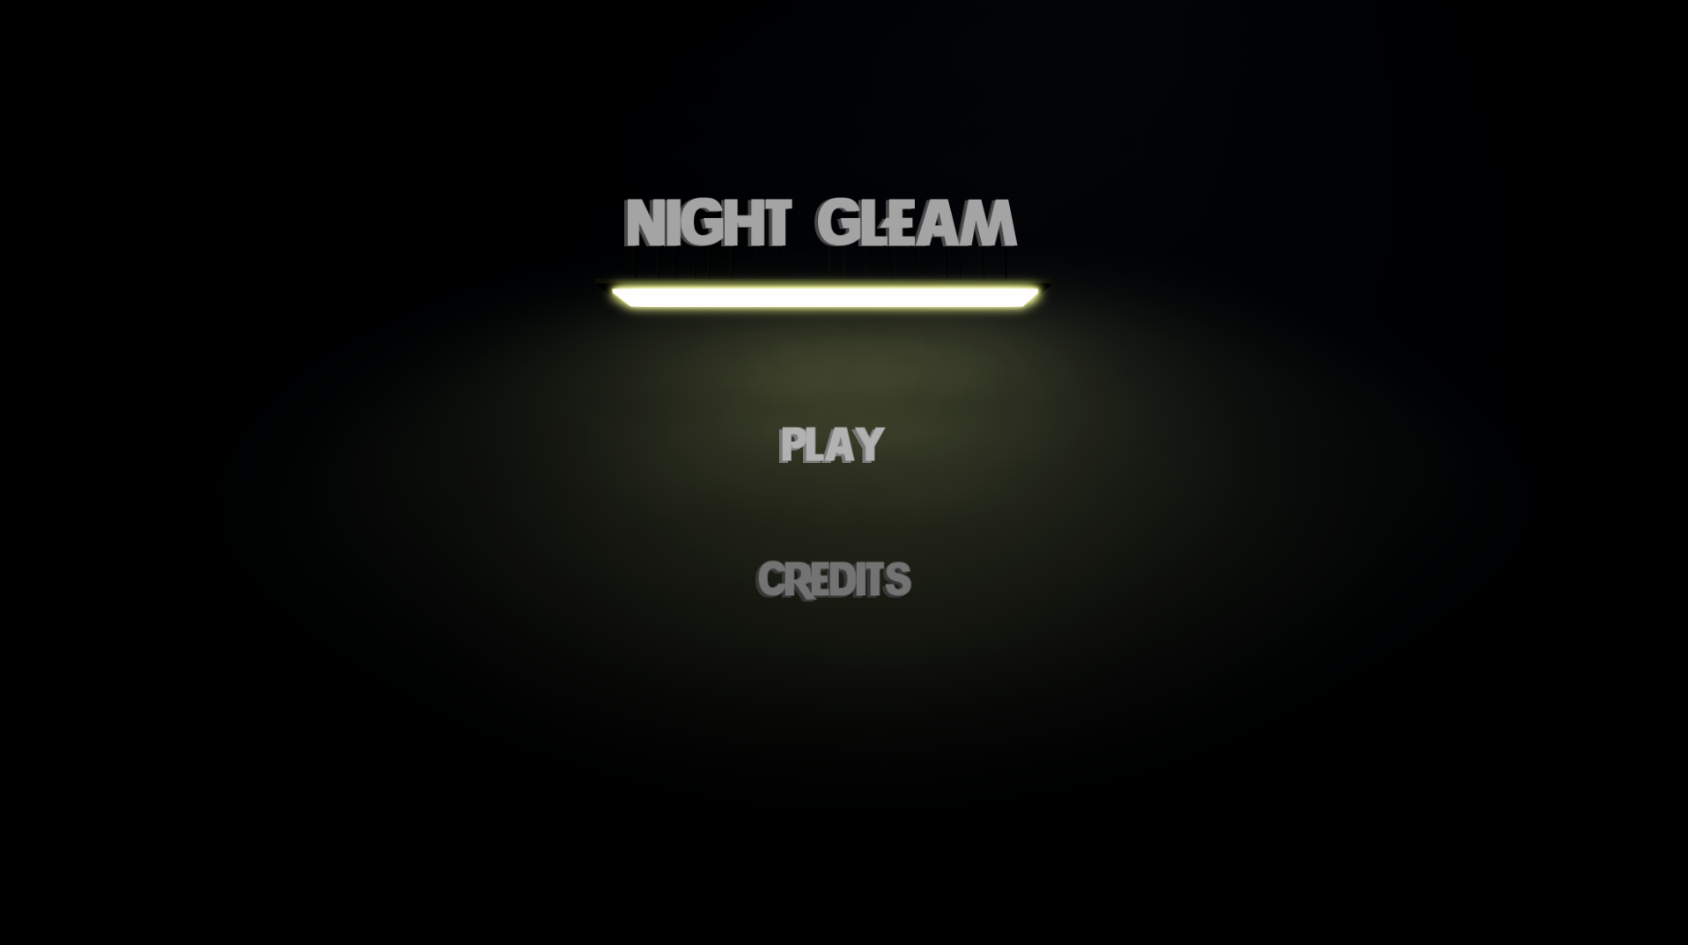 NightGleam